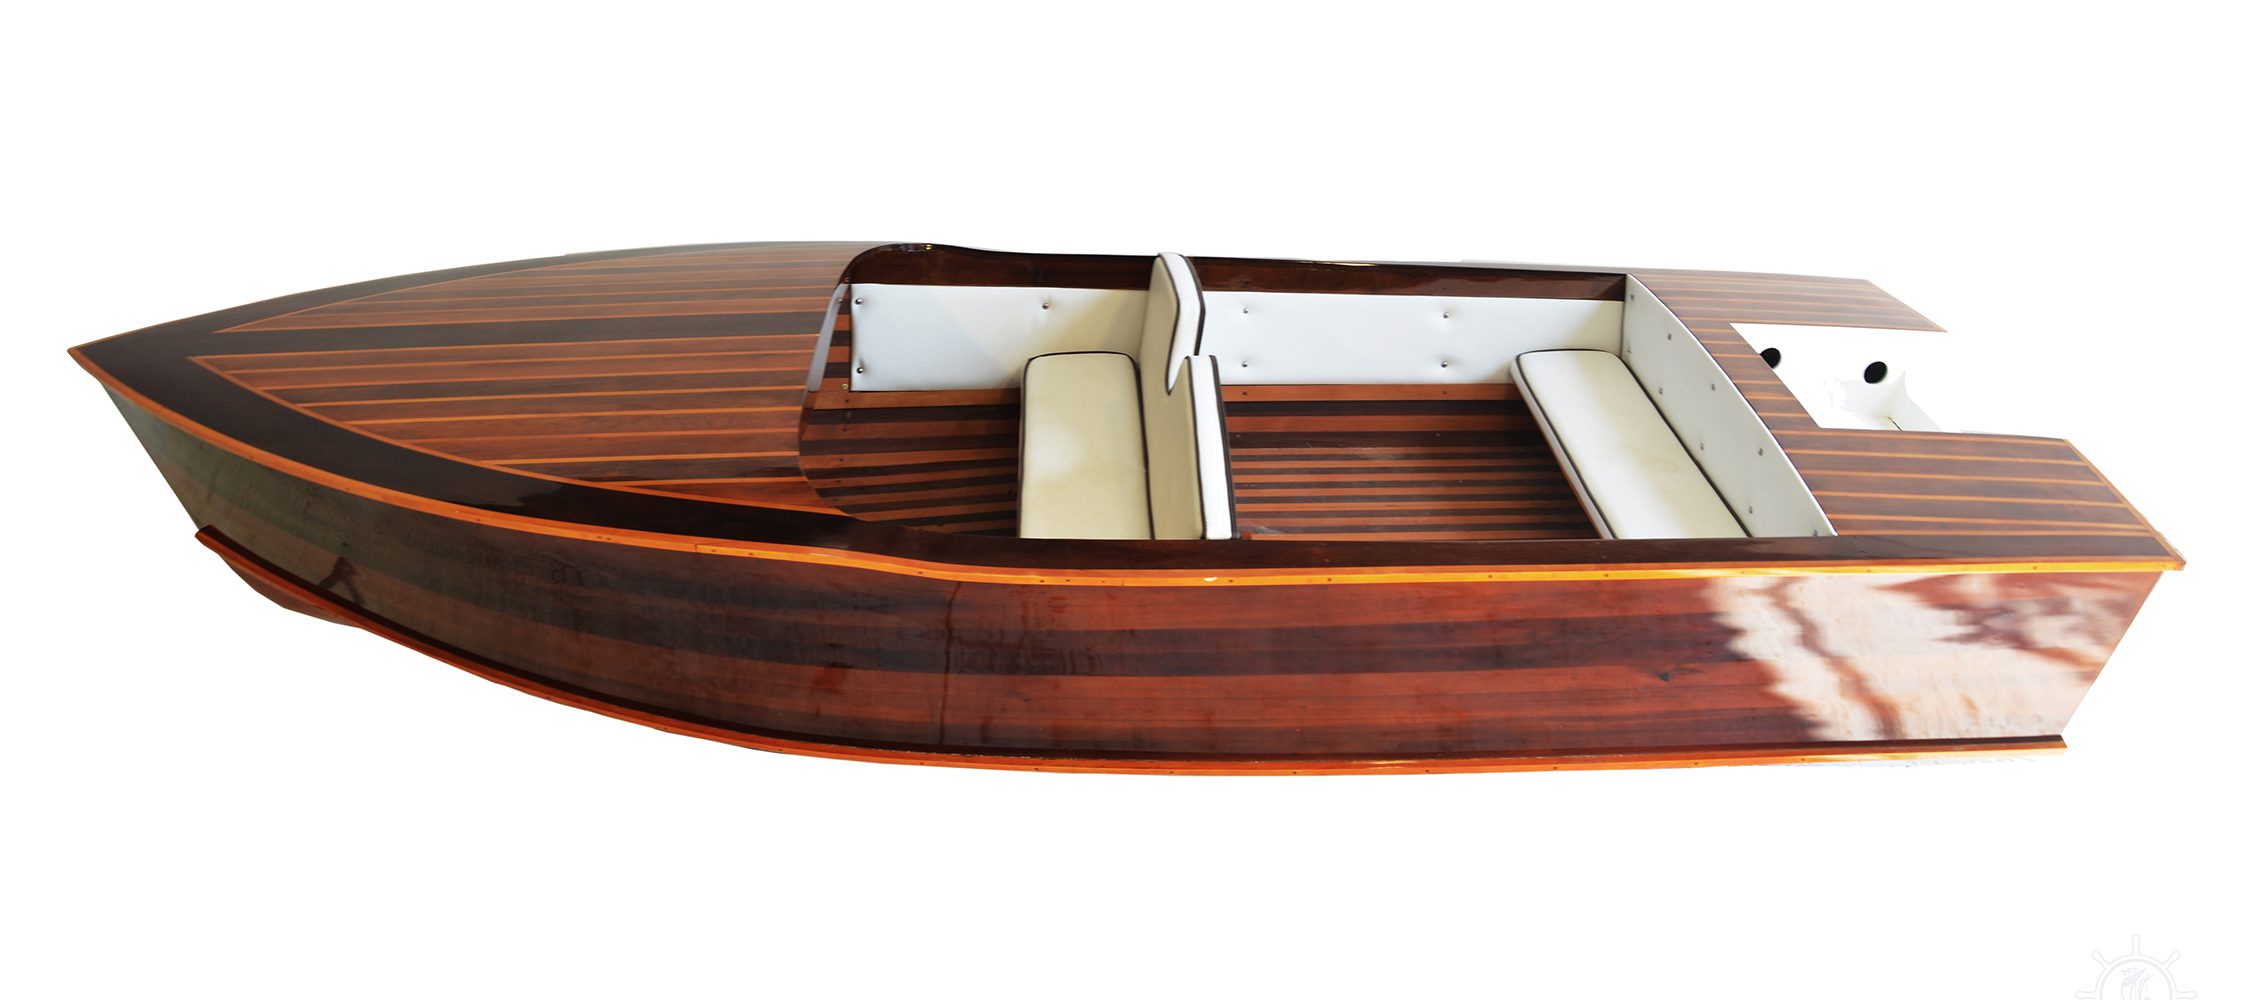 Buy Chris Craft Design Boat Online - Wooden Boat USA